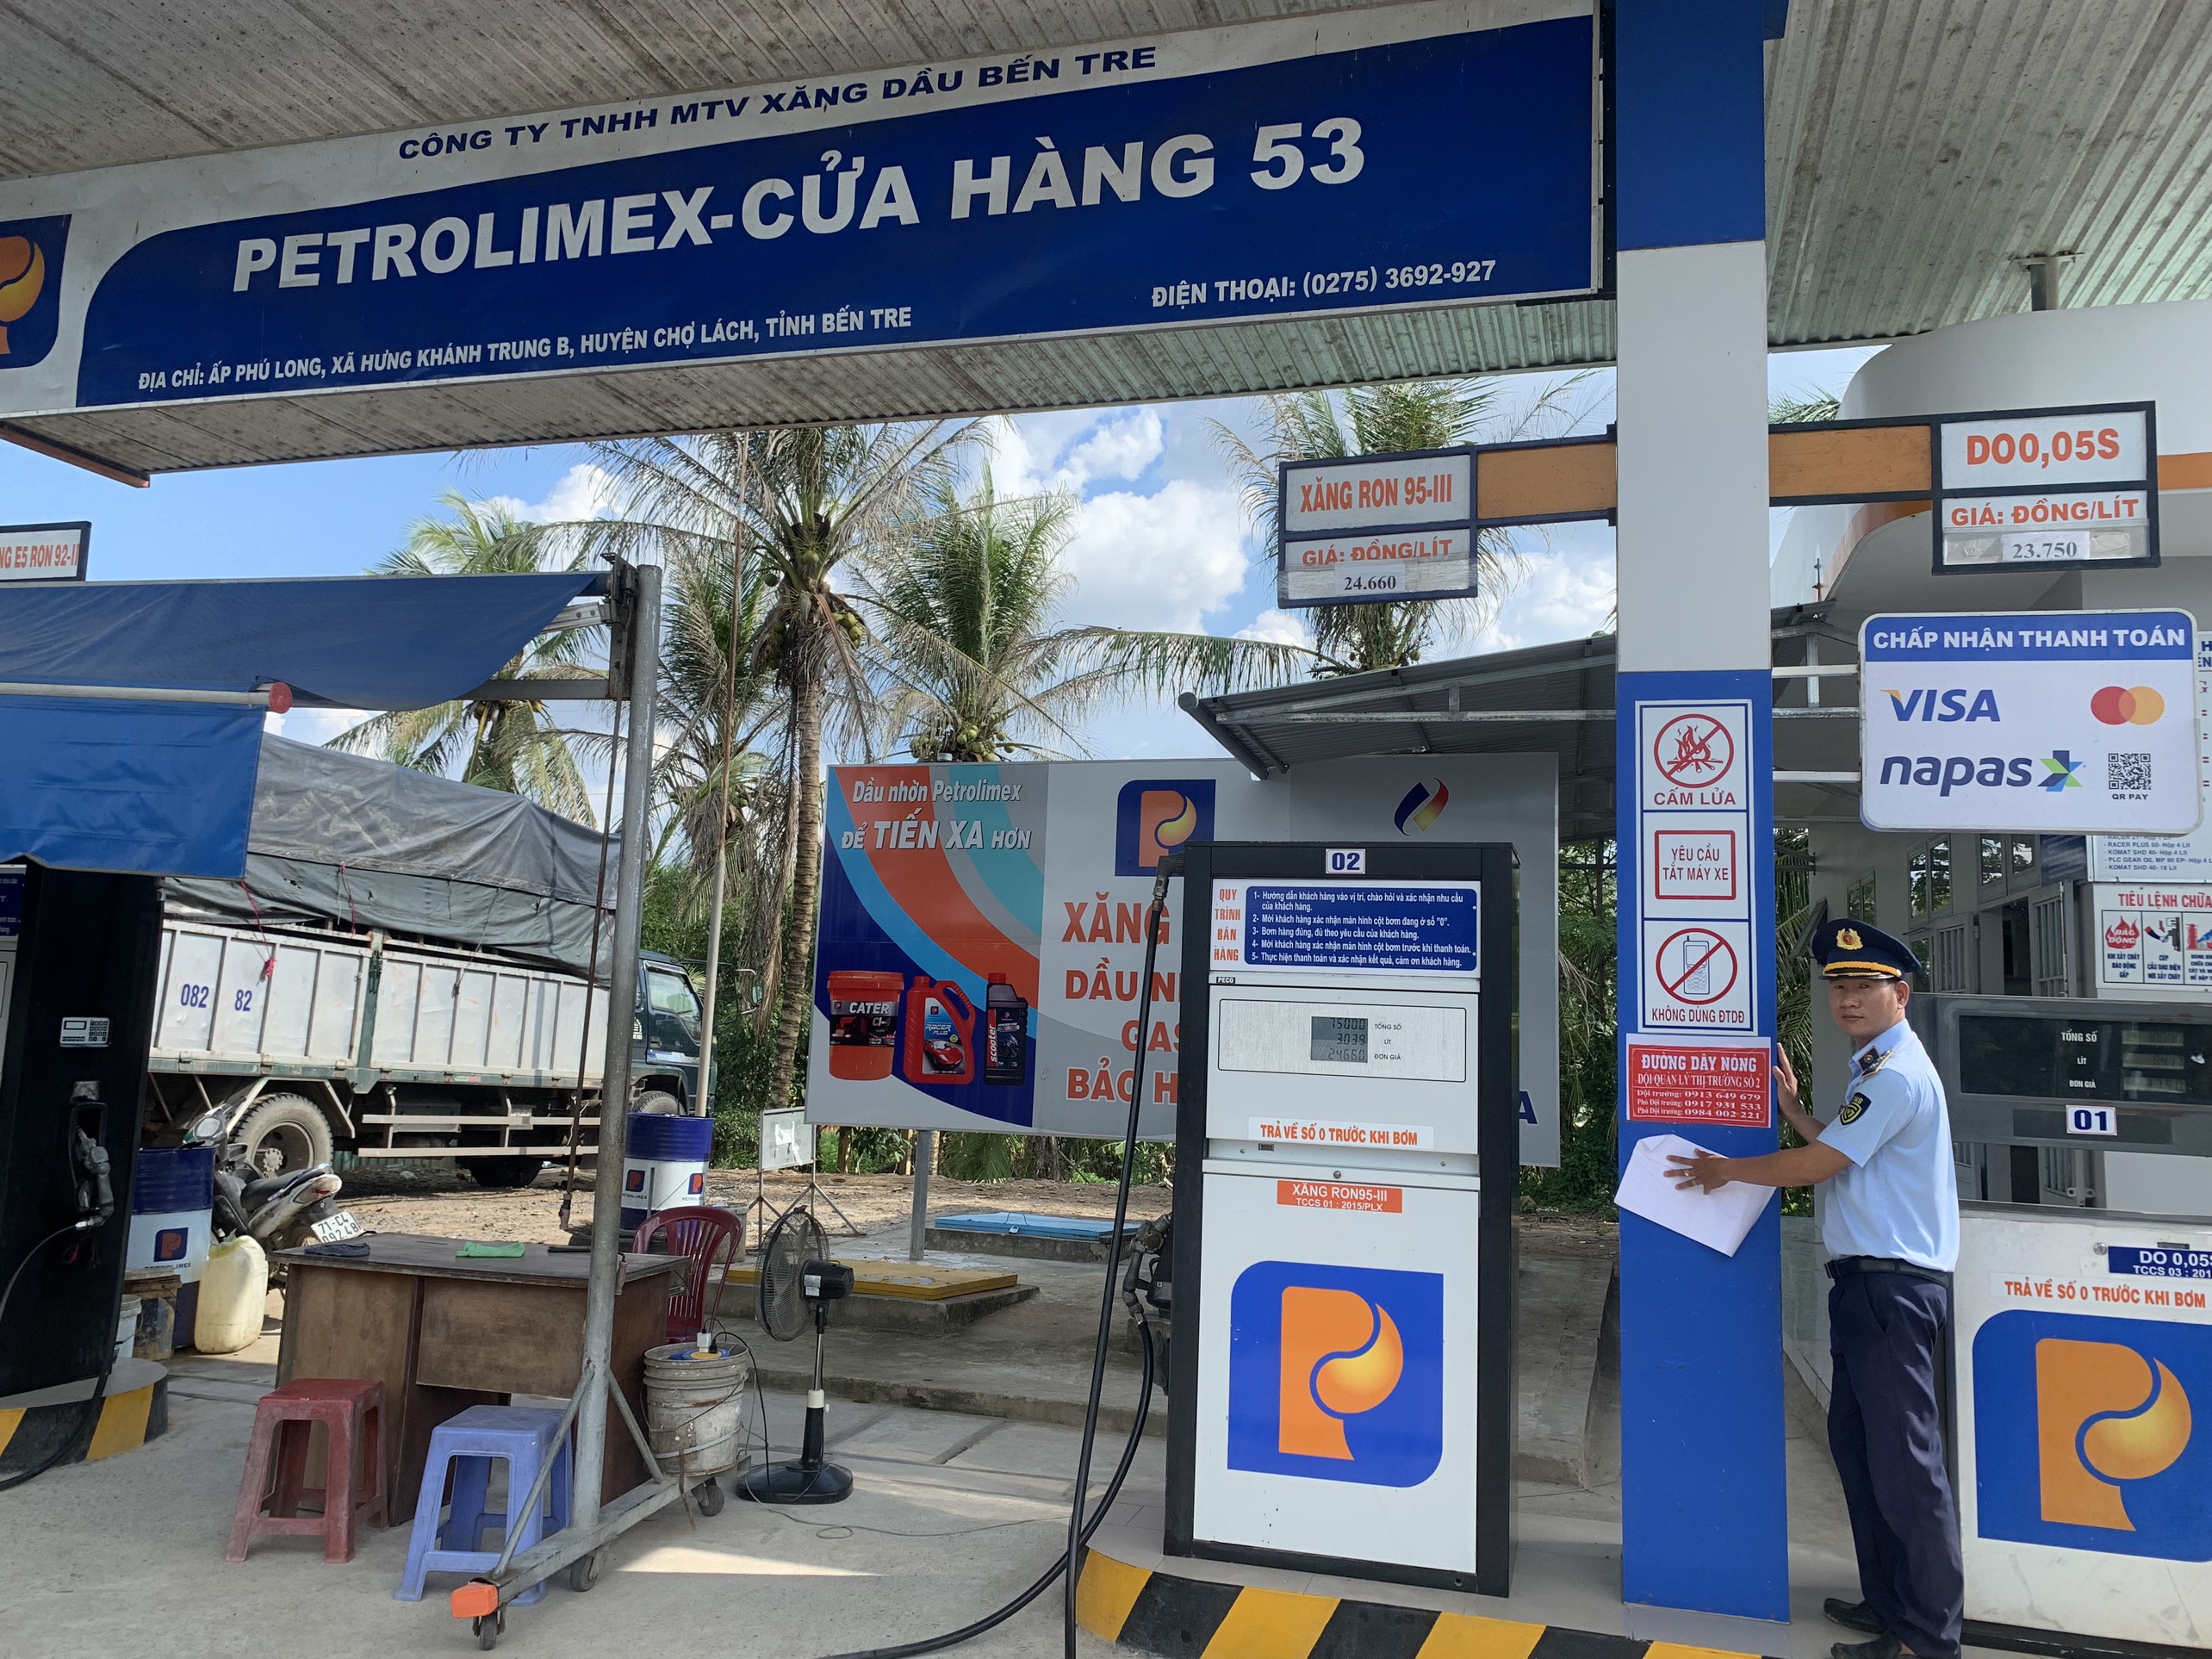 Đội QLTT số 2 dán số điện thoại đường dây nóng tại một cửa hàng kinh doanh xăng dầu ở xã Hưng Khánh Trung B, huyện Chợ Lách